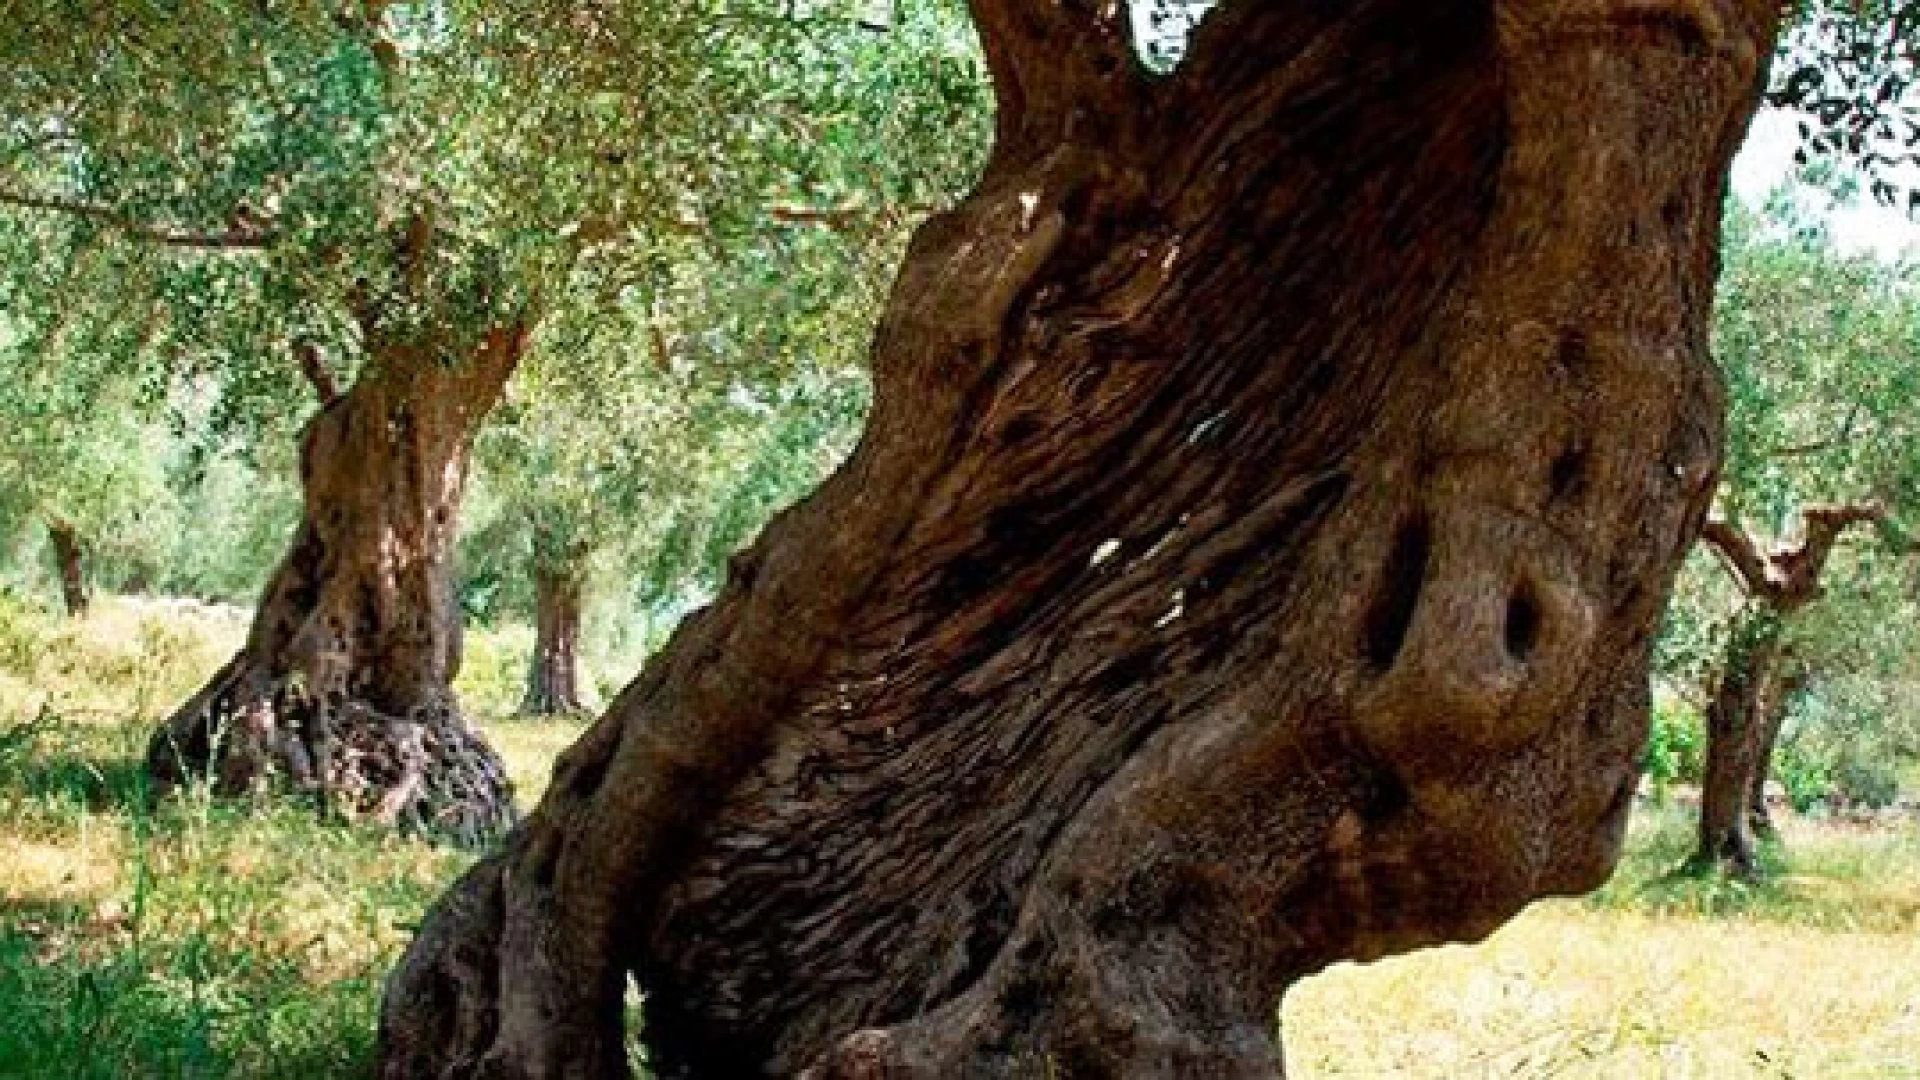 Venafro: rinviata la camminata nazionale tra gli olivi in programma domenica.